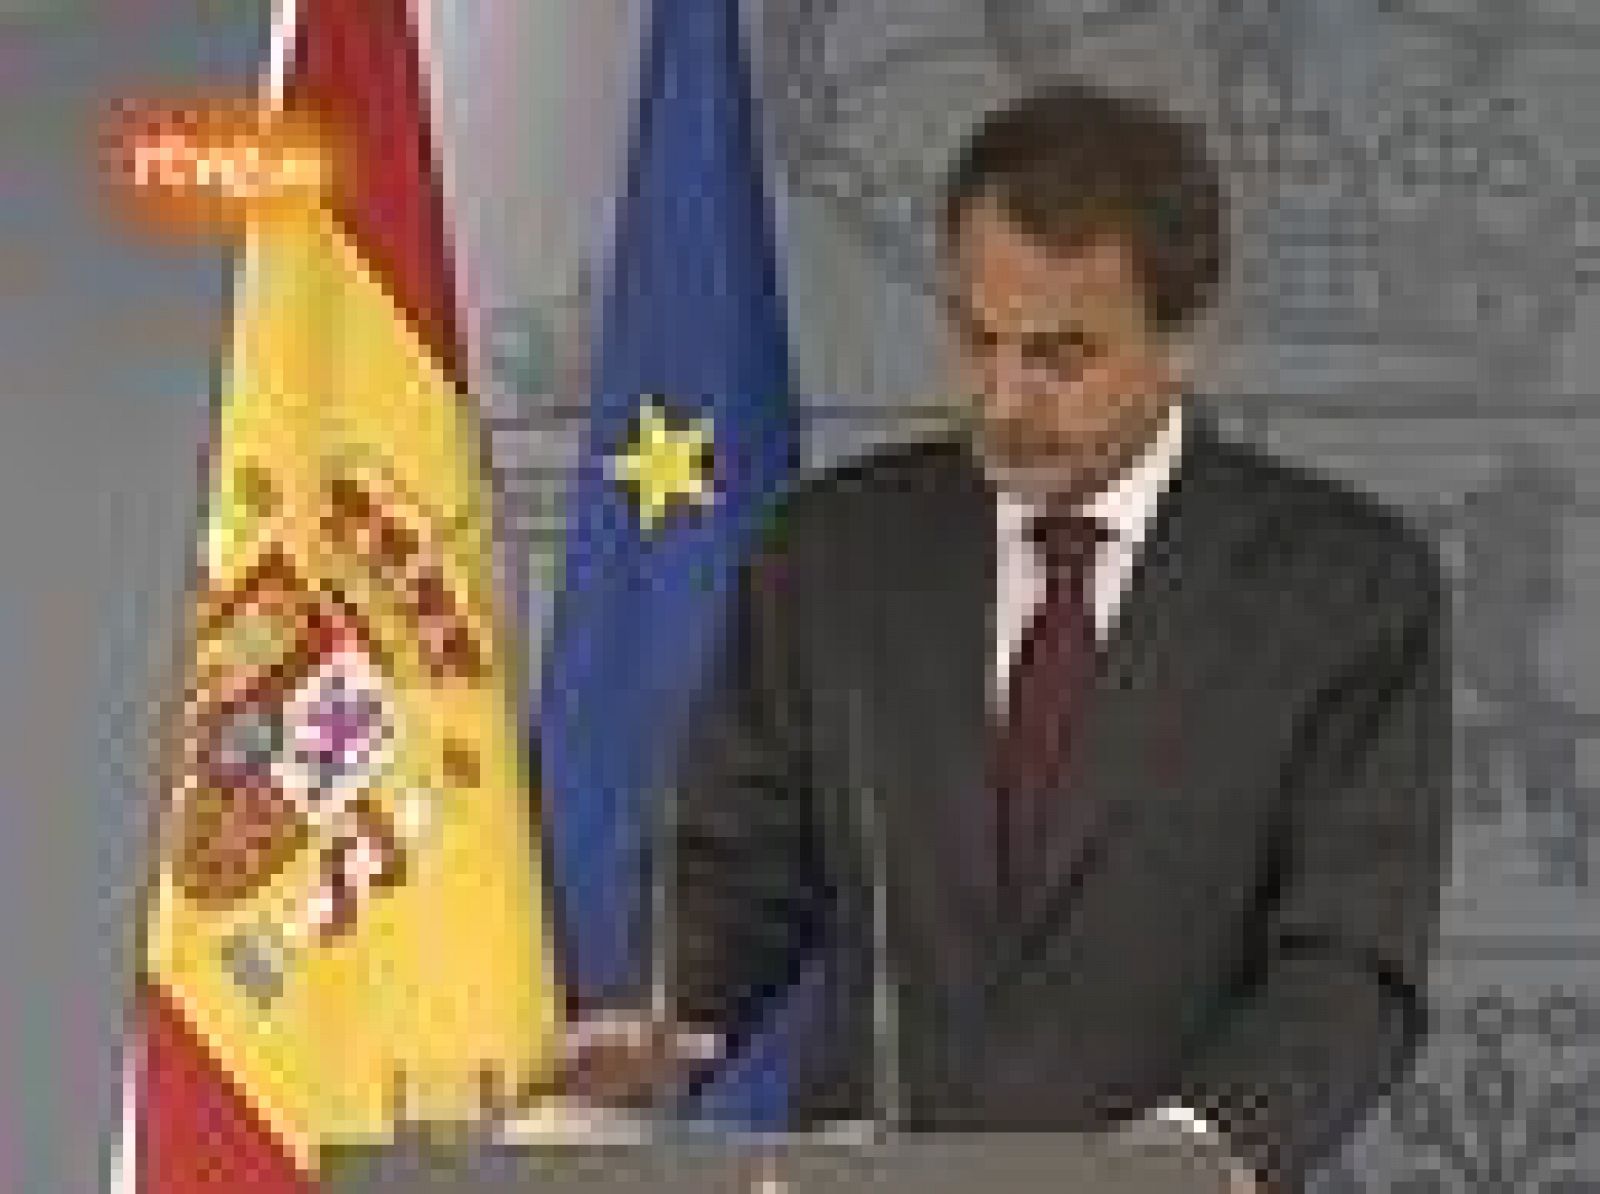  Zapatero anuncia un giro "político" en su Gobierno